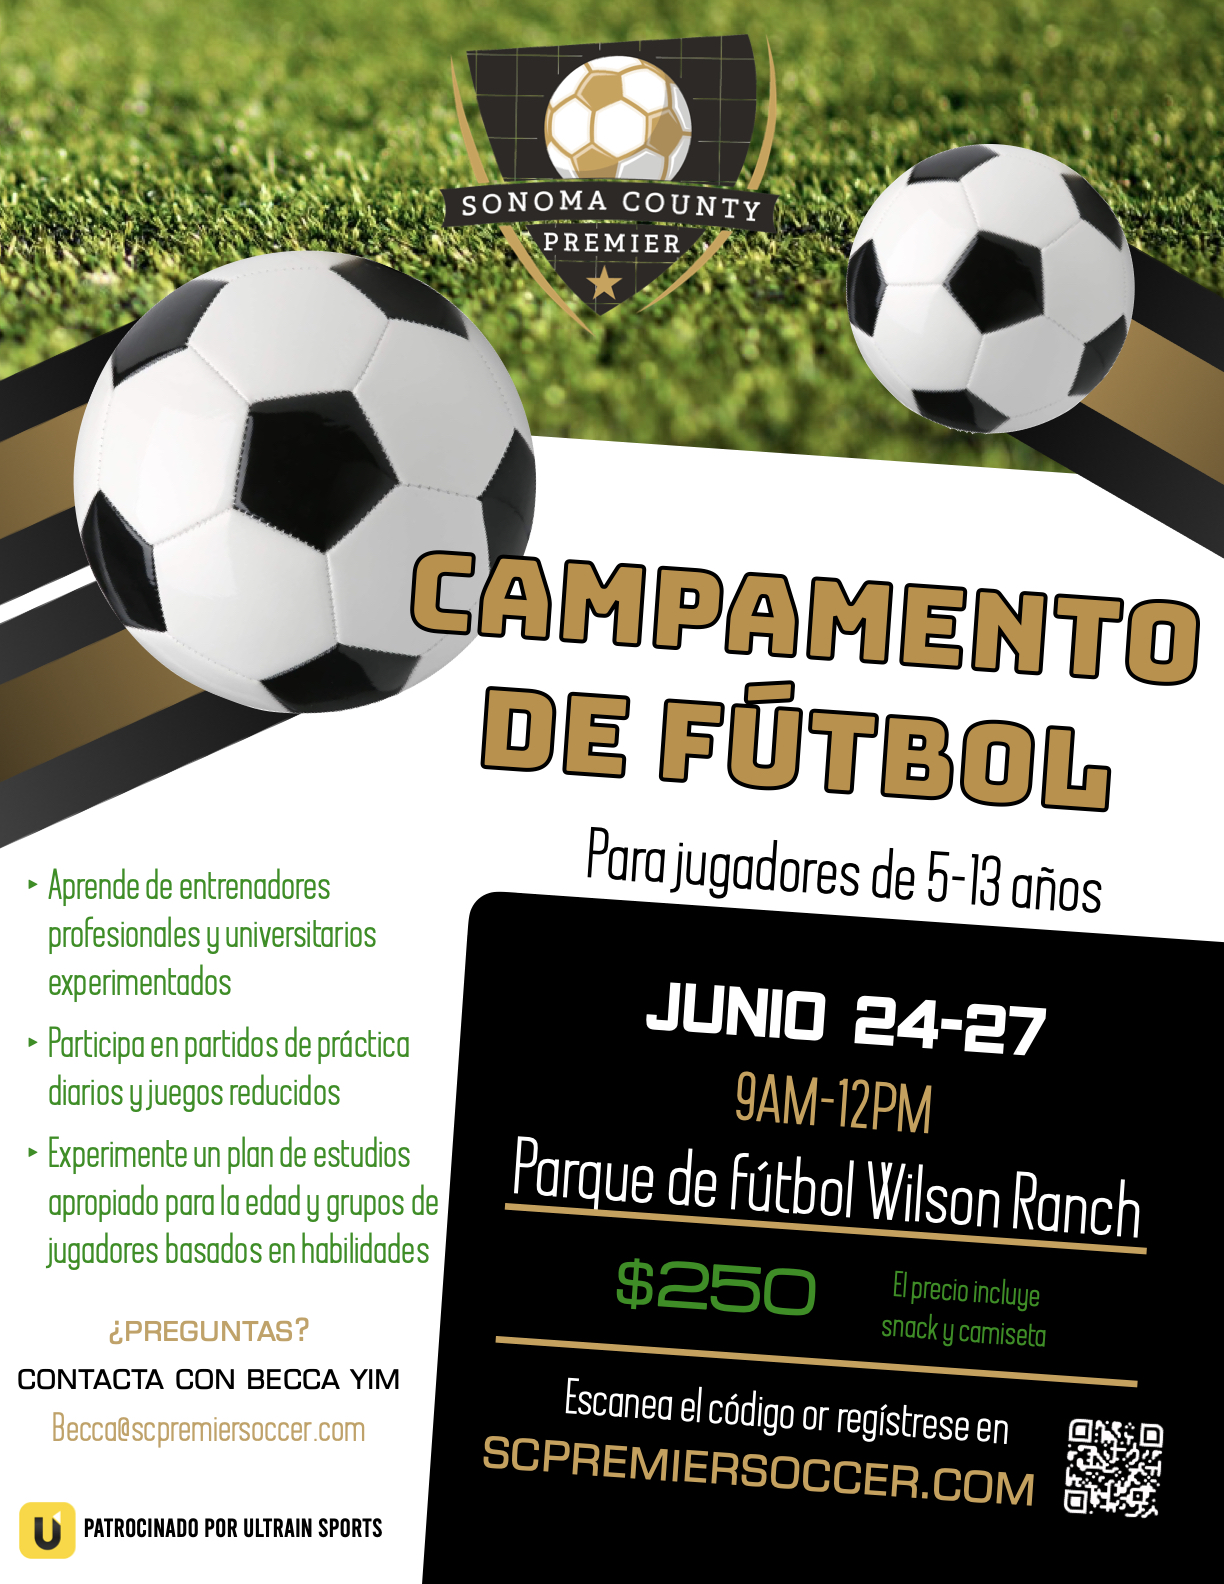 Soccer camp flier Spanish.1